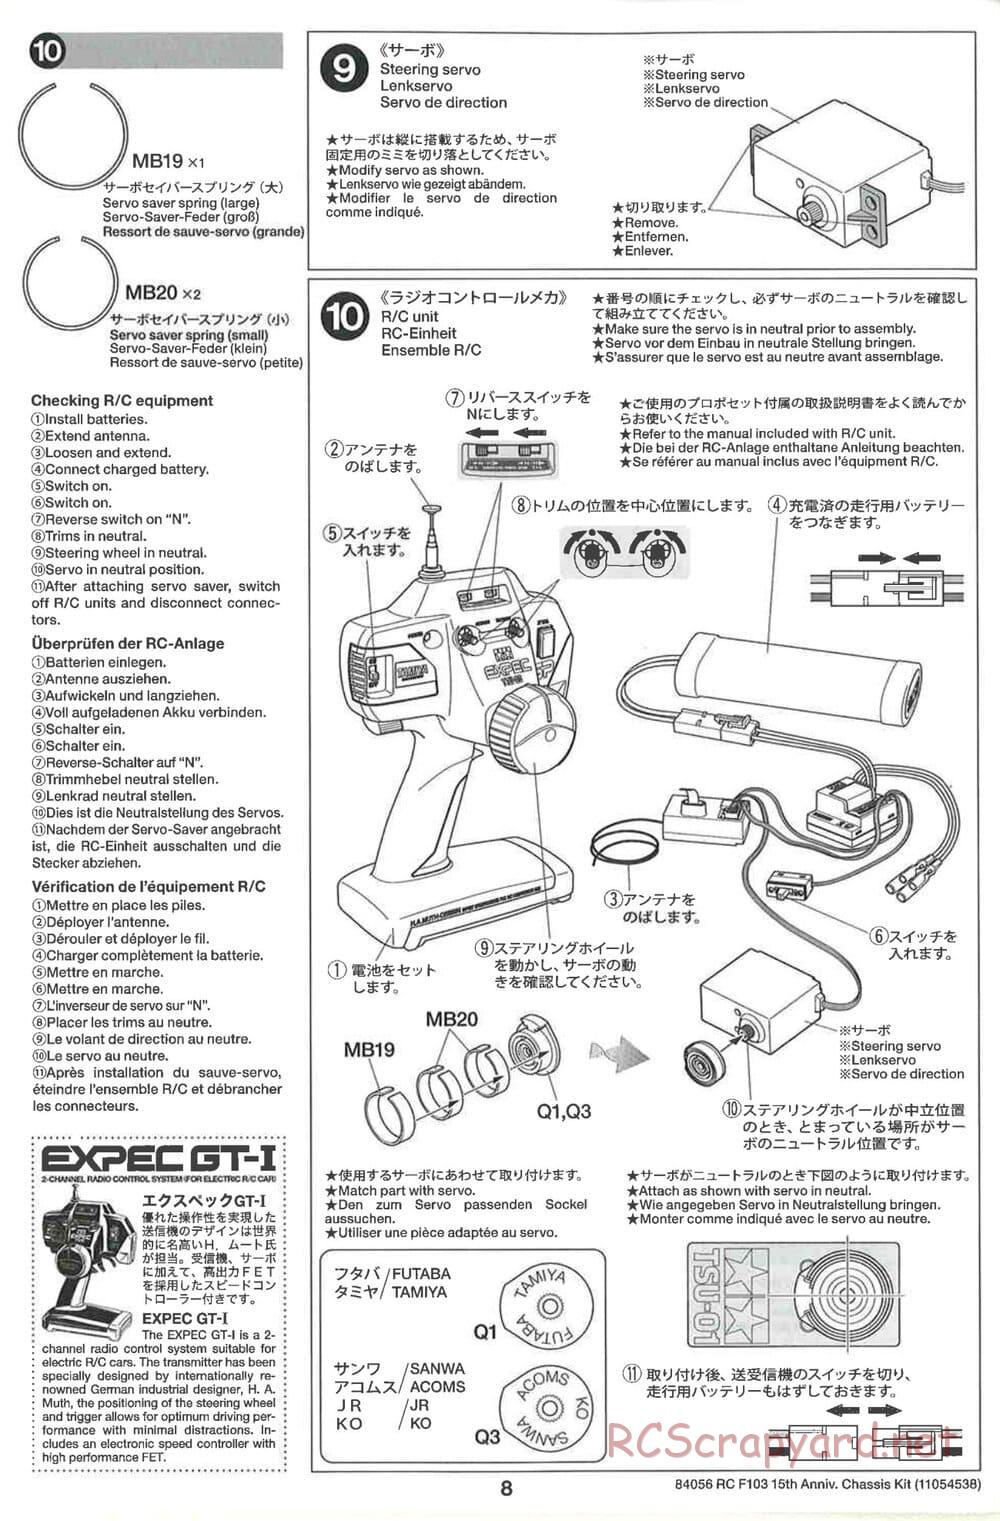 Tamiya - F103 15th Anniversary Chassis - Manual - Page 8